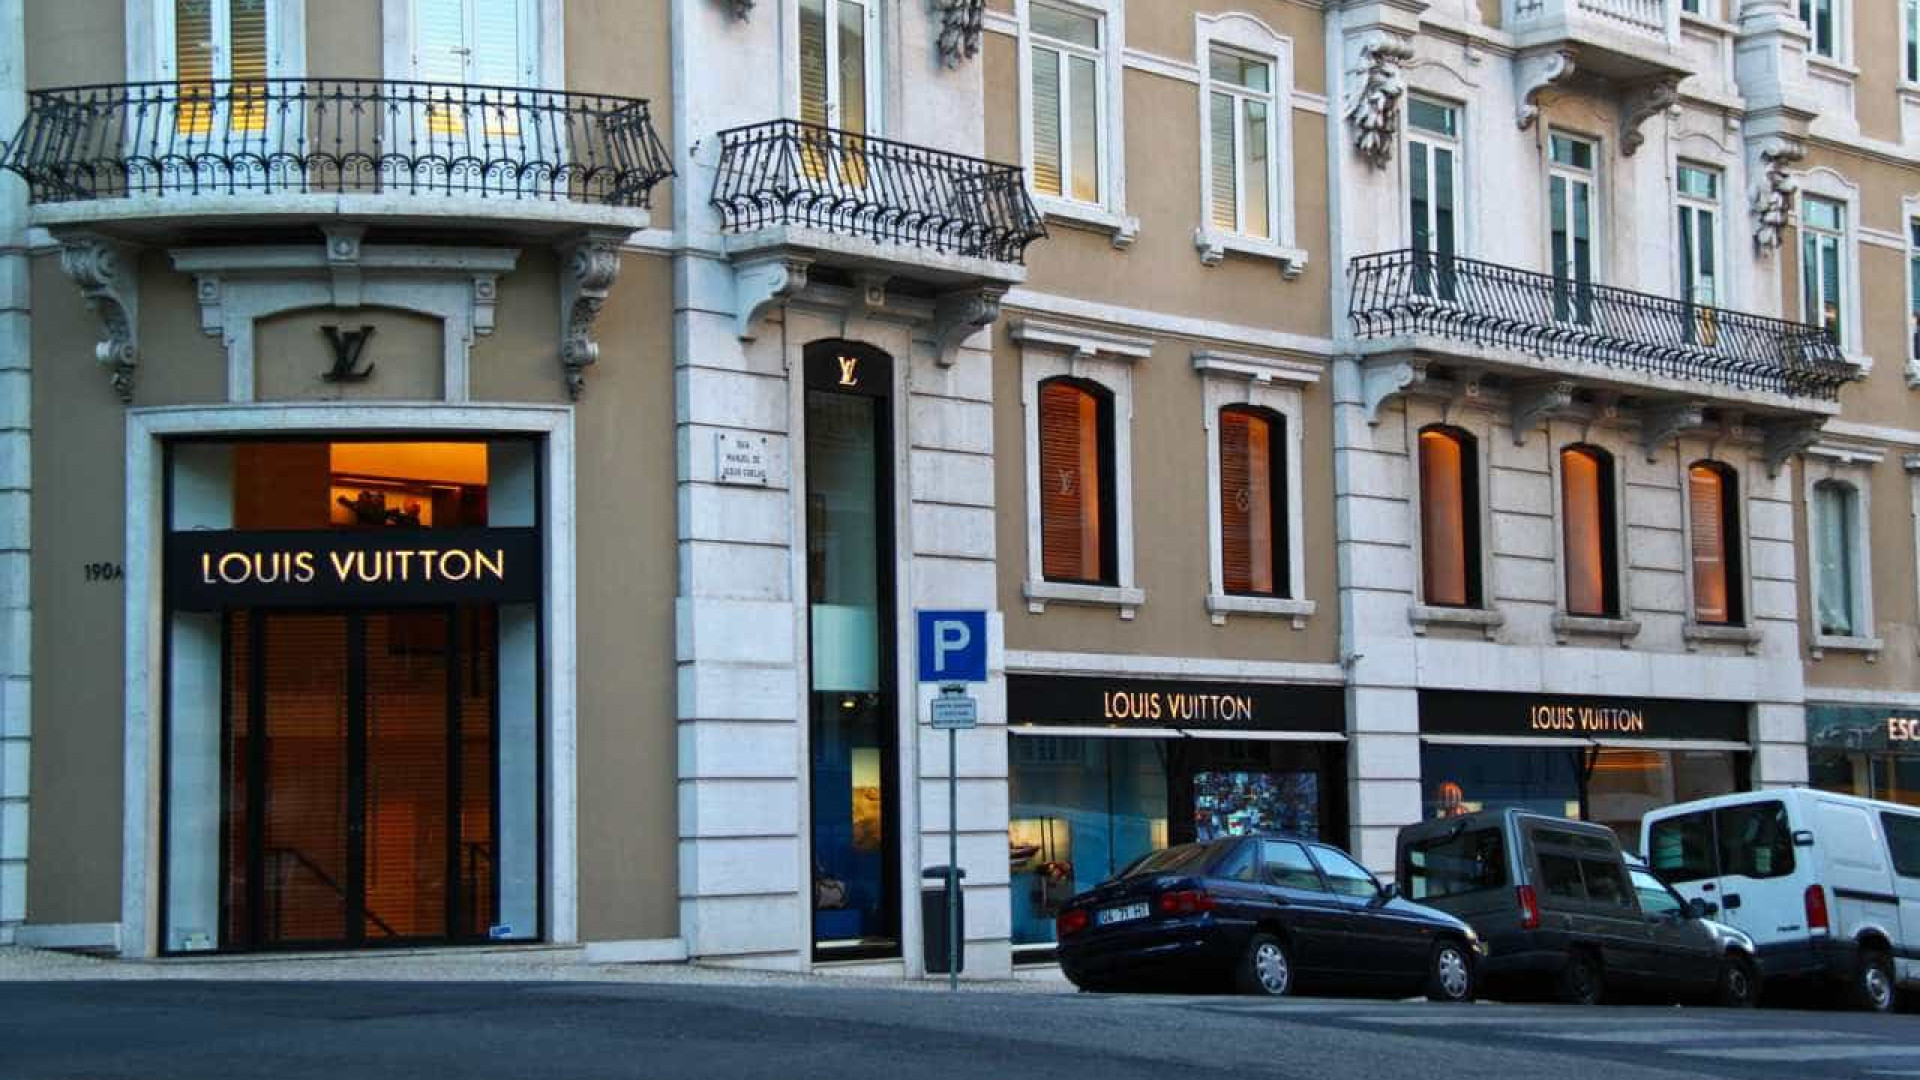 Notícias ao Minuto - Louis Vuitton vai ter peças prêt-à-porter em Portugal